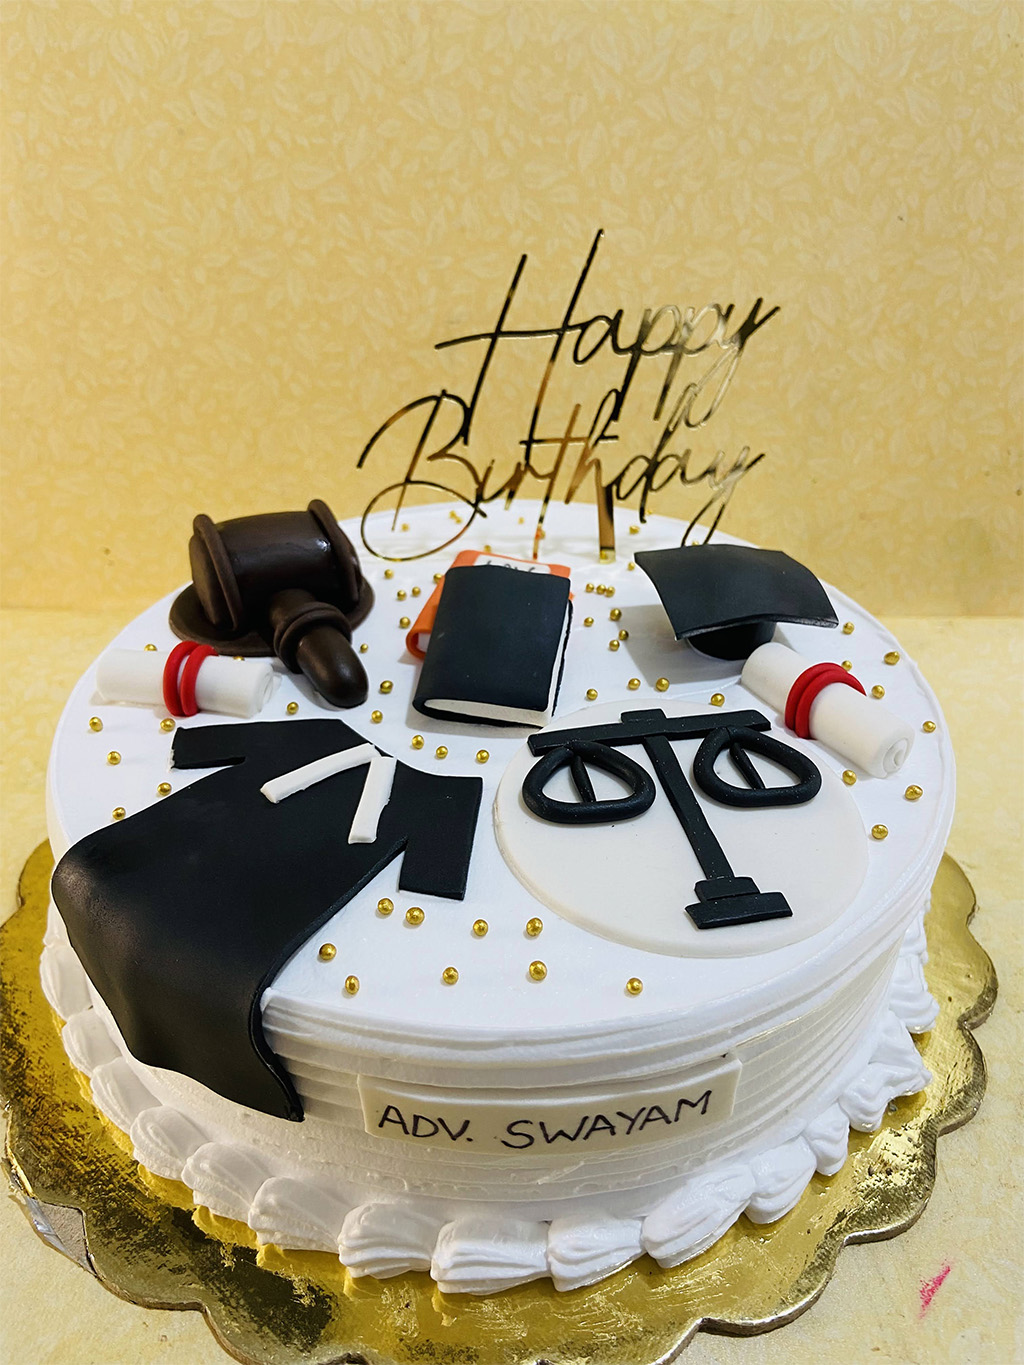 Advocate theme birthday cake in mixed fruit flavour👨‍💼 . .  #amritsarhomebakers #amritsarcakes #amritsarbaker #amritsarbakery… |  Instagram